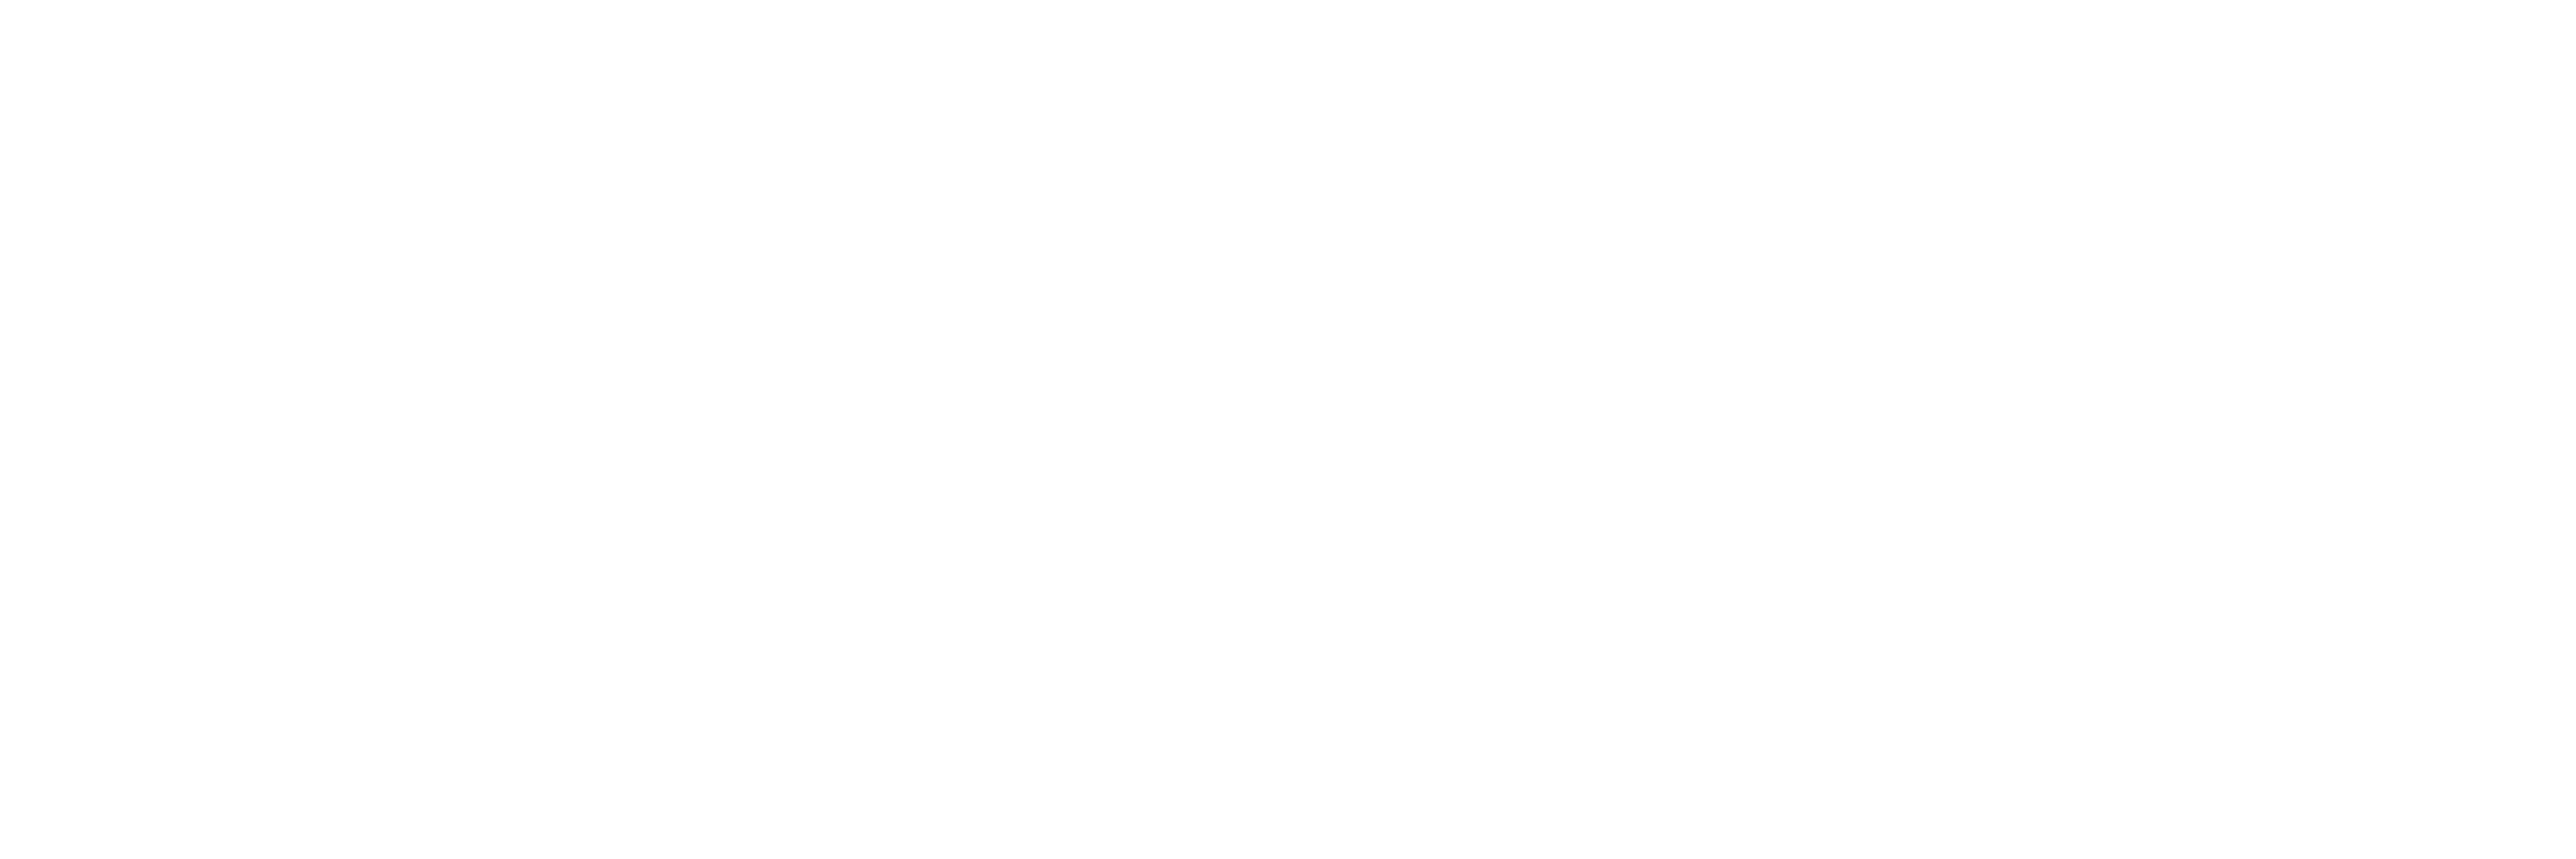 Hakai Magazine Logo